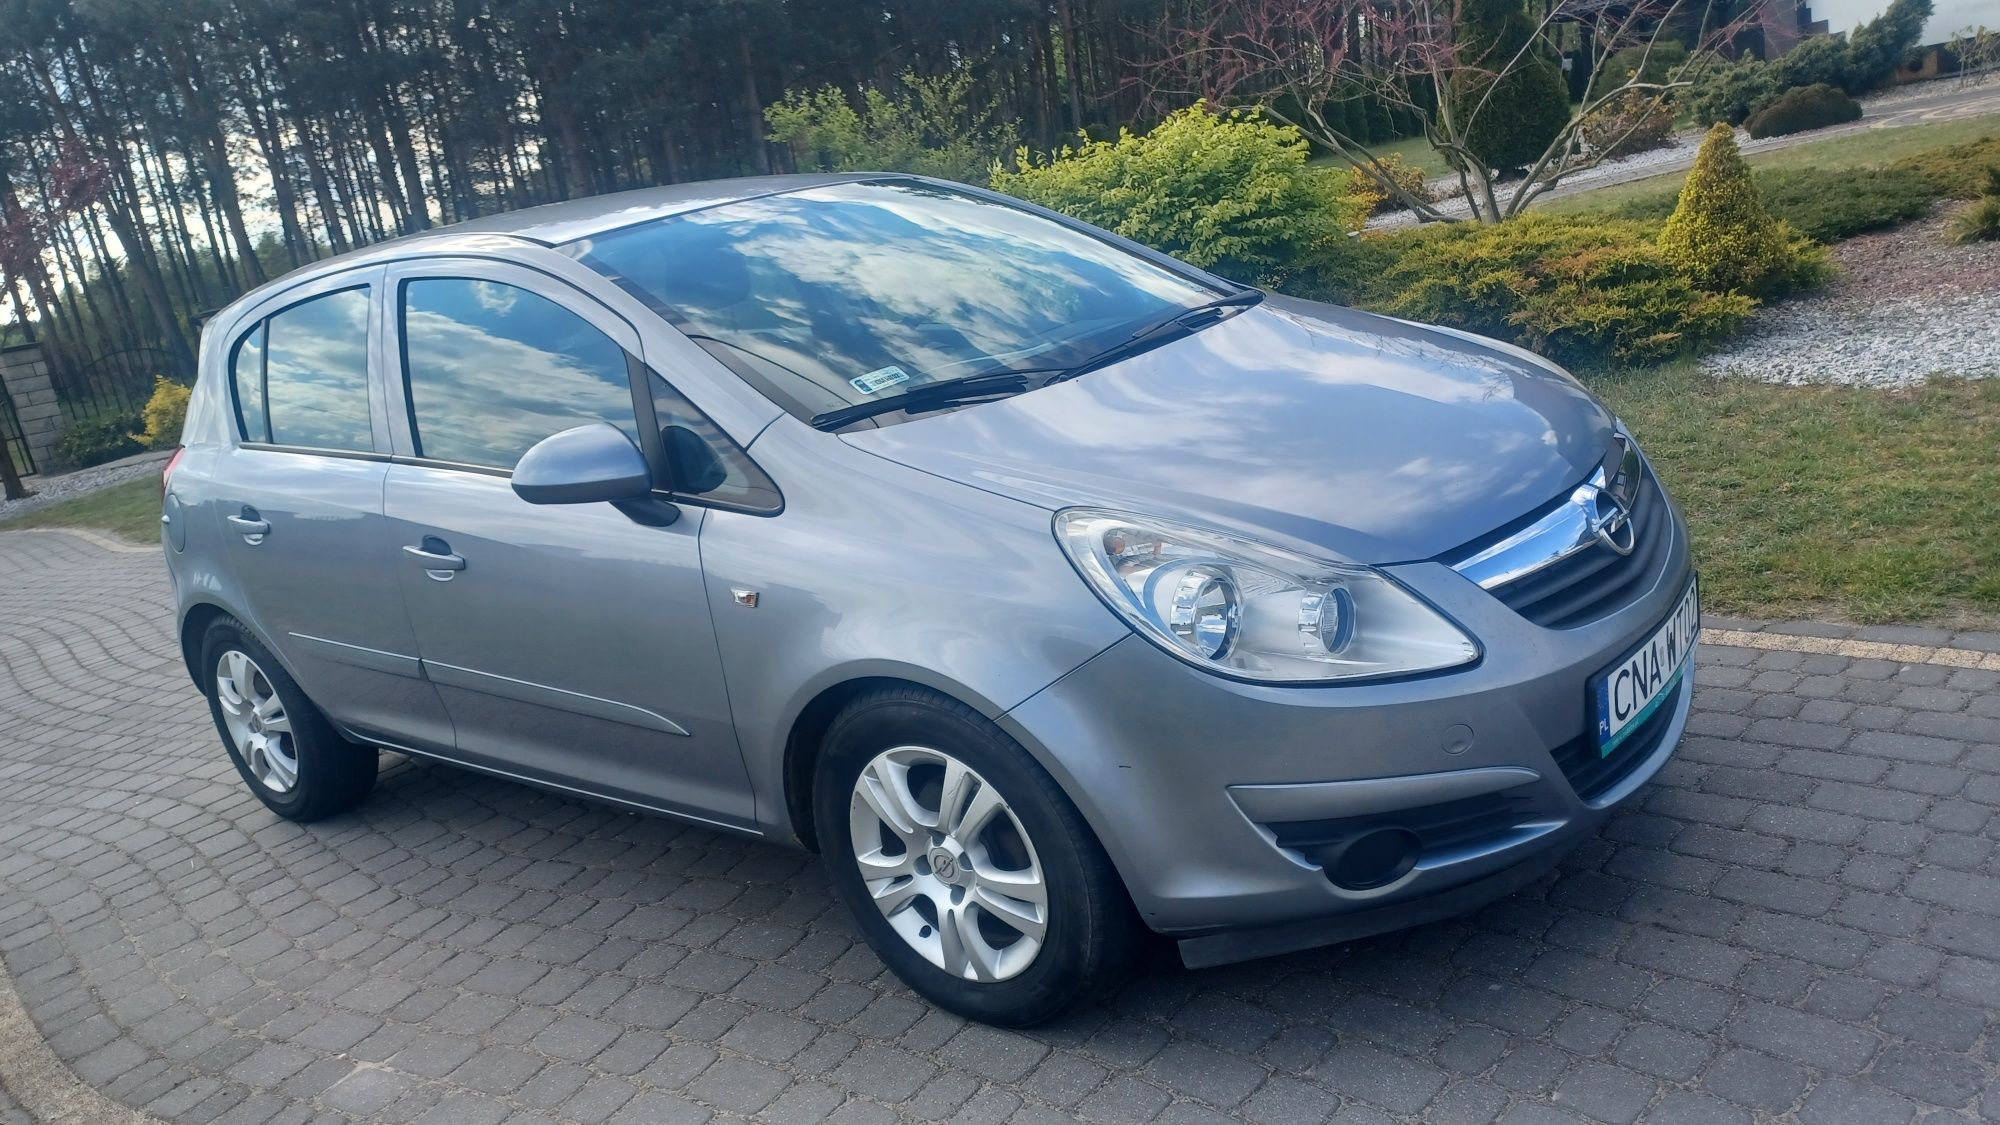 Opel Corsa 1.2 benzyna 2006rok klima